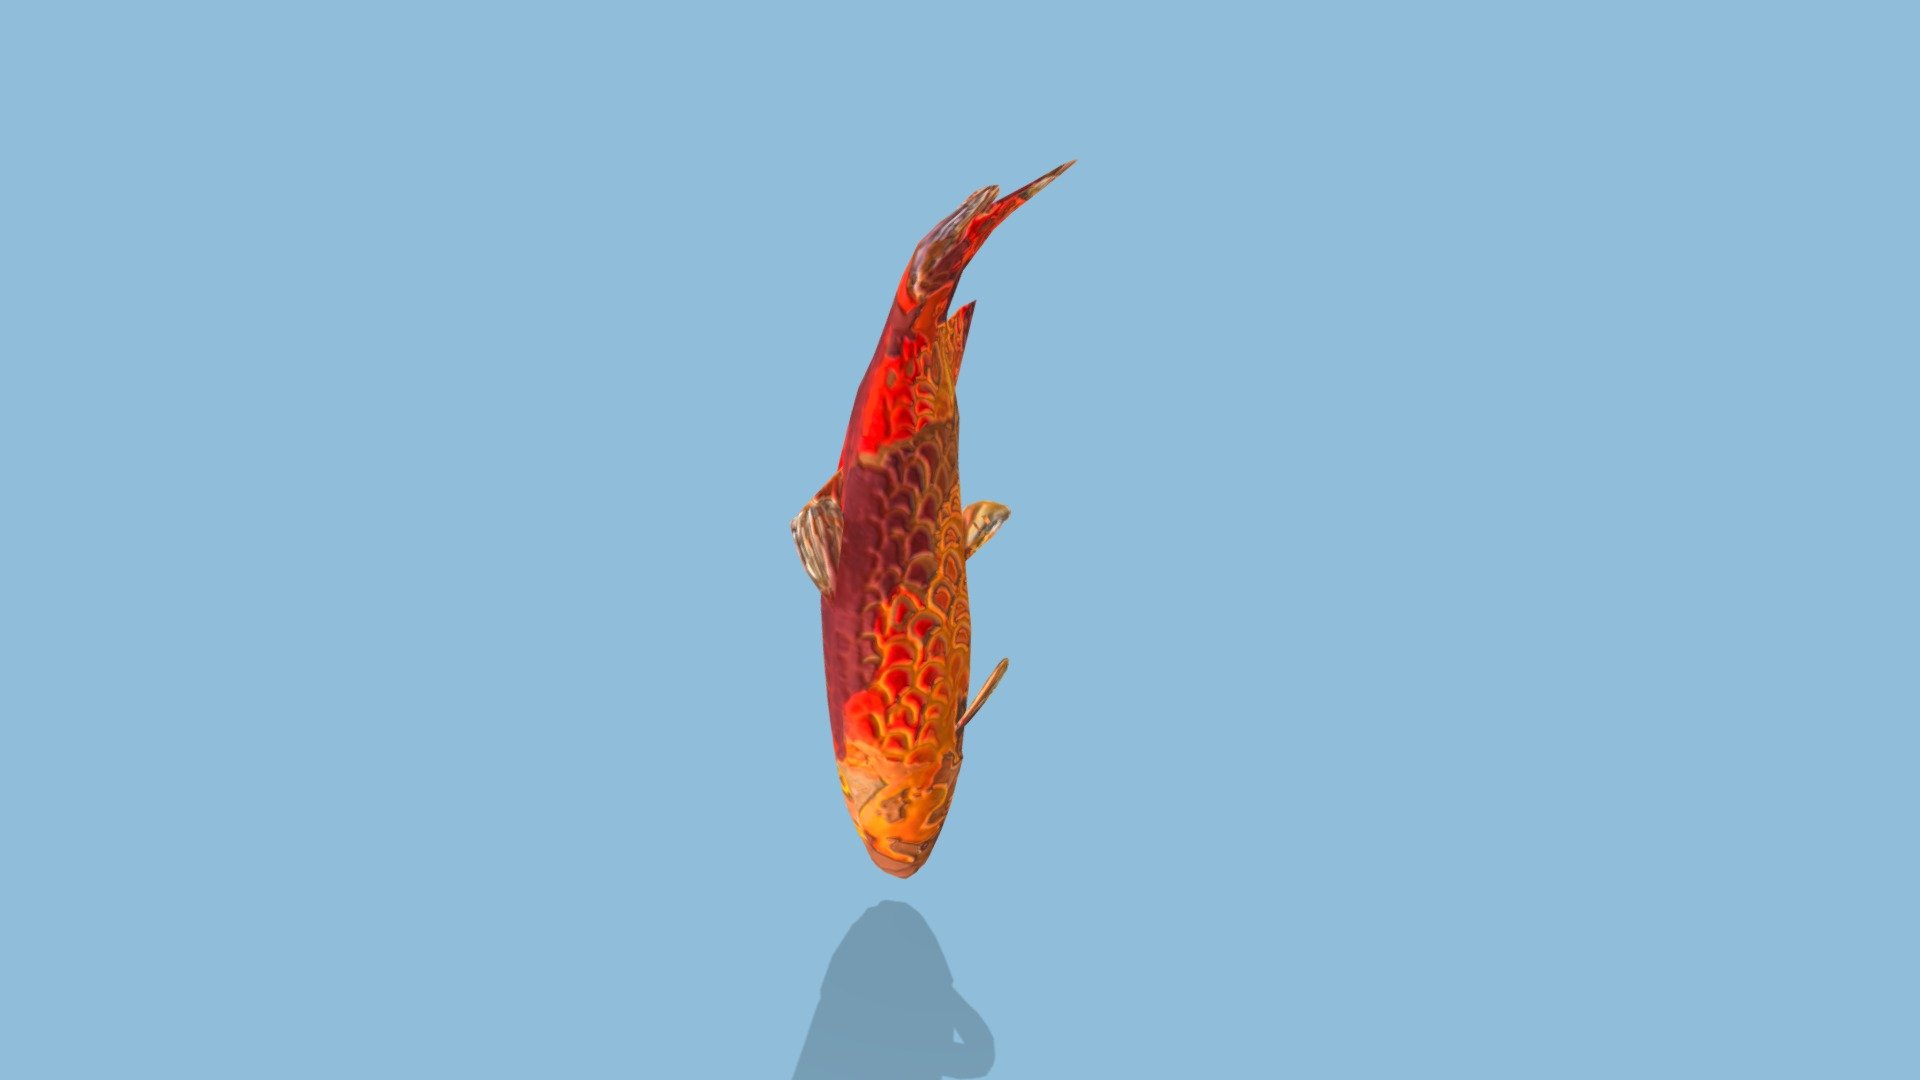 锦鲤，原始品种为红色鲤鱼(Cyprinus carpio),红鲤作为观赏鱼类 - 锦鲤(Cyprinus carpio) - 3D model by xbdqpc719 3d model